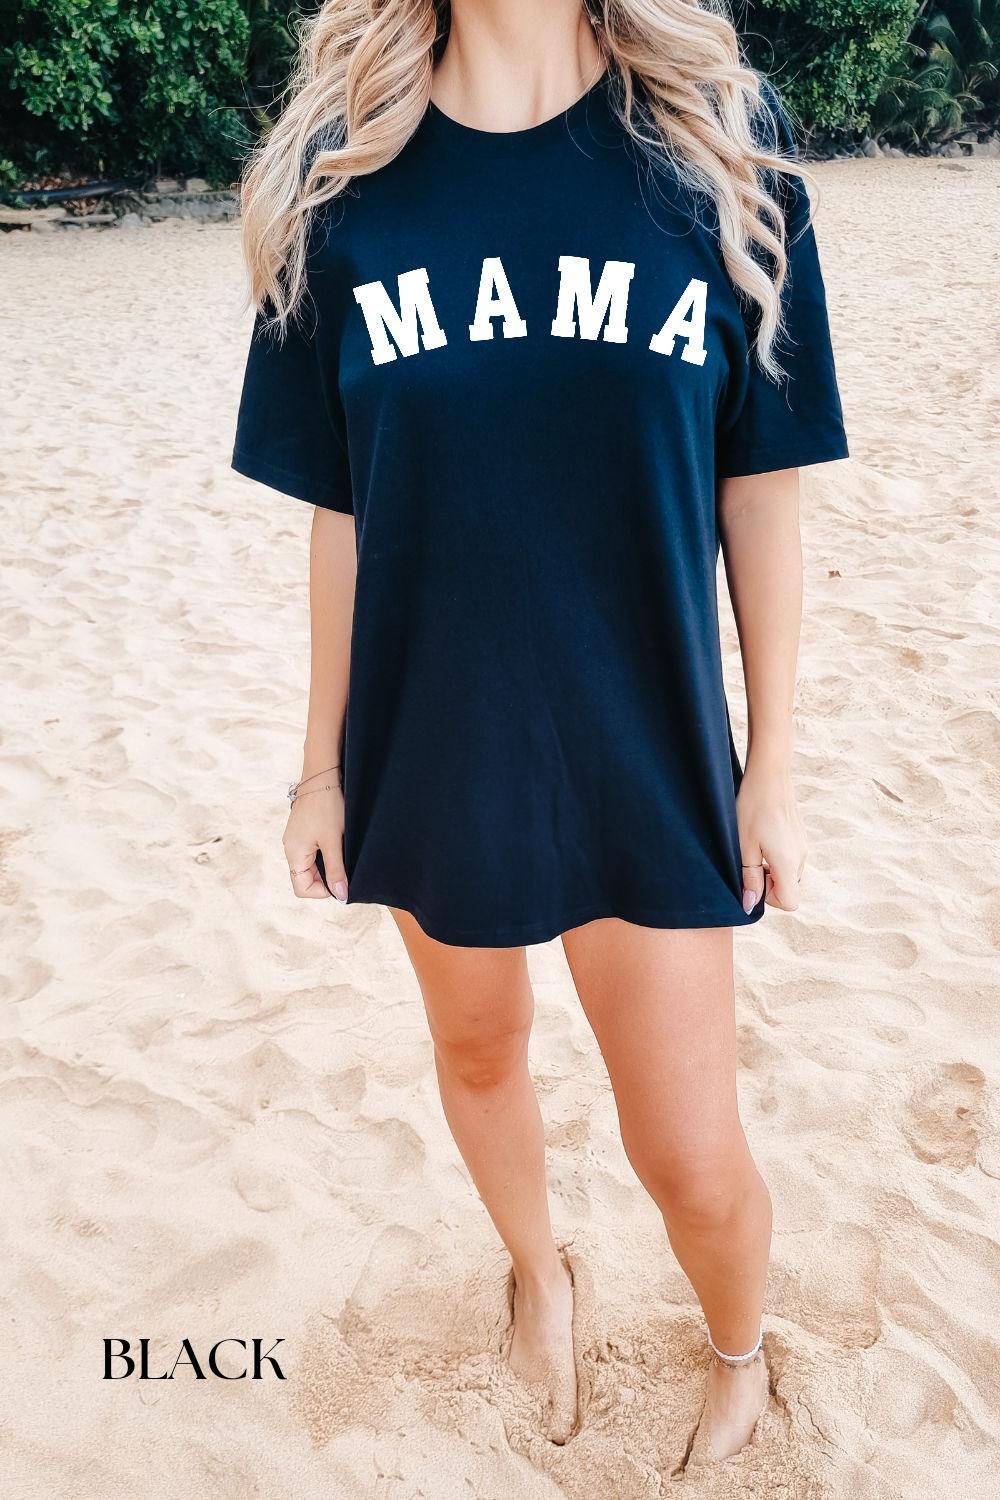 Black Mama CC Shirt